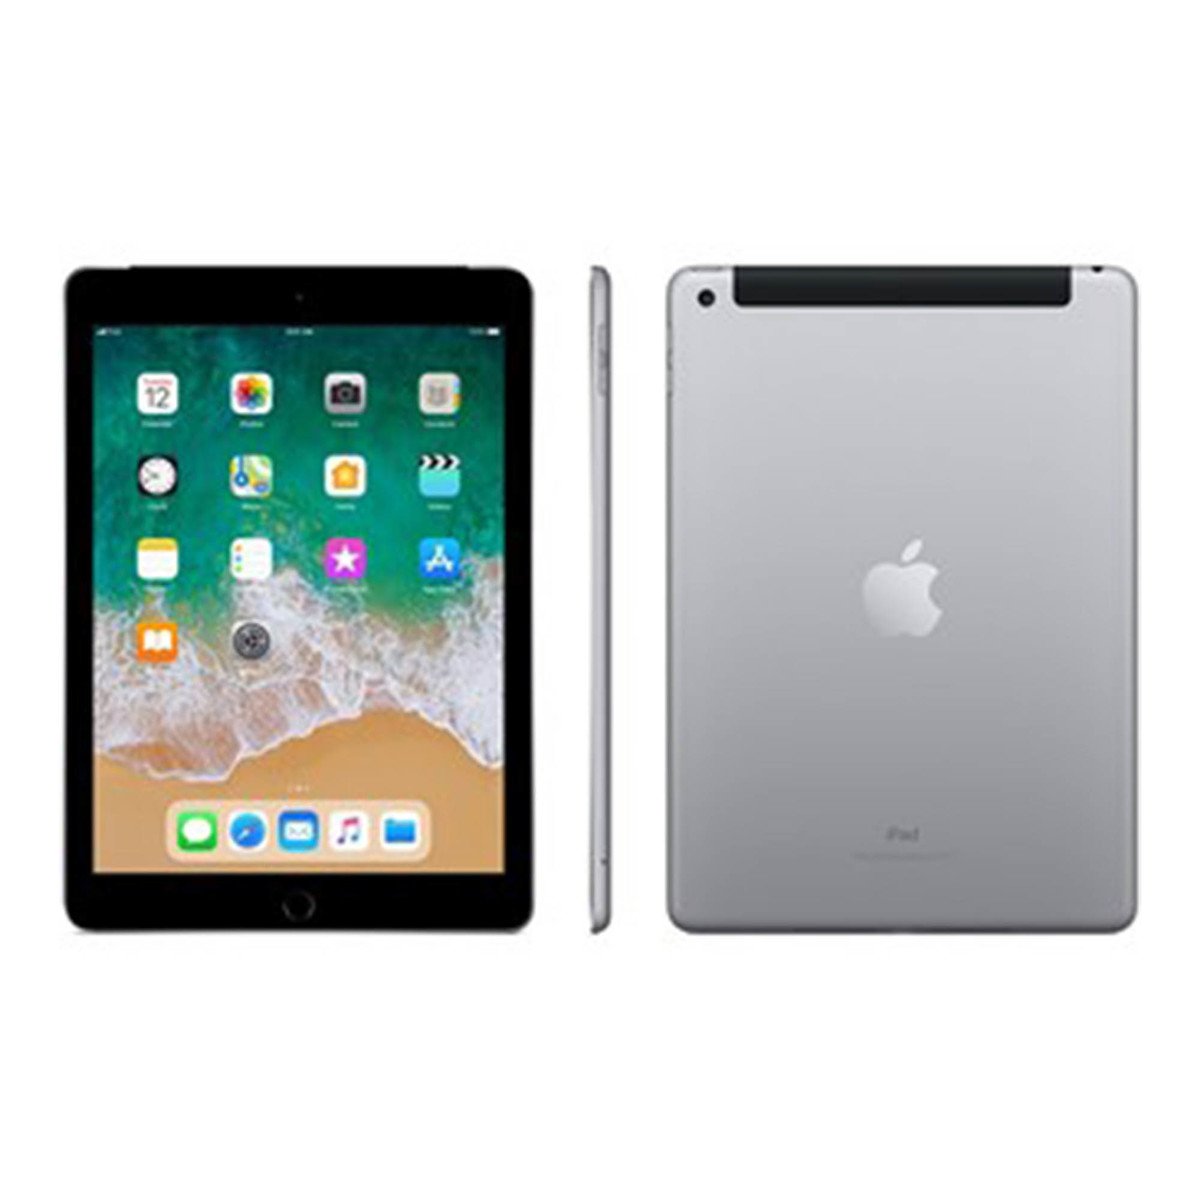 Apple iPad-6th Generation 9.7inch Wifi+Cellular 128GB Space Grey